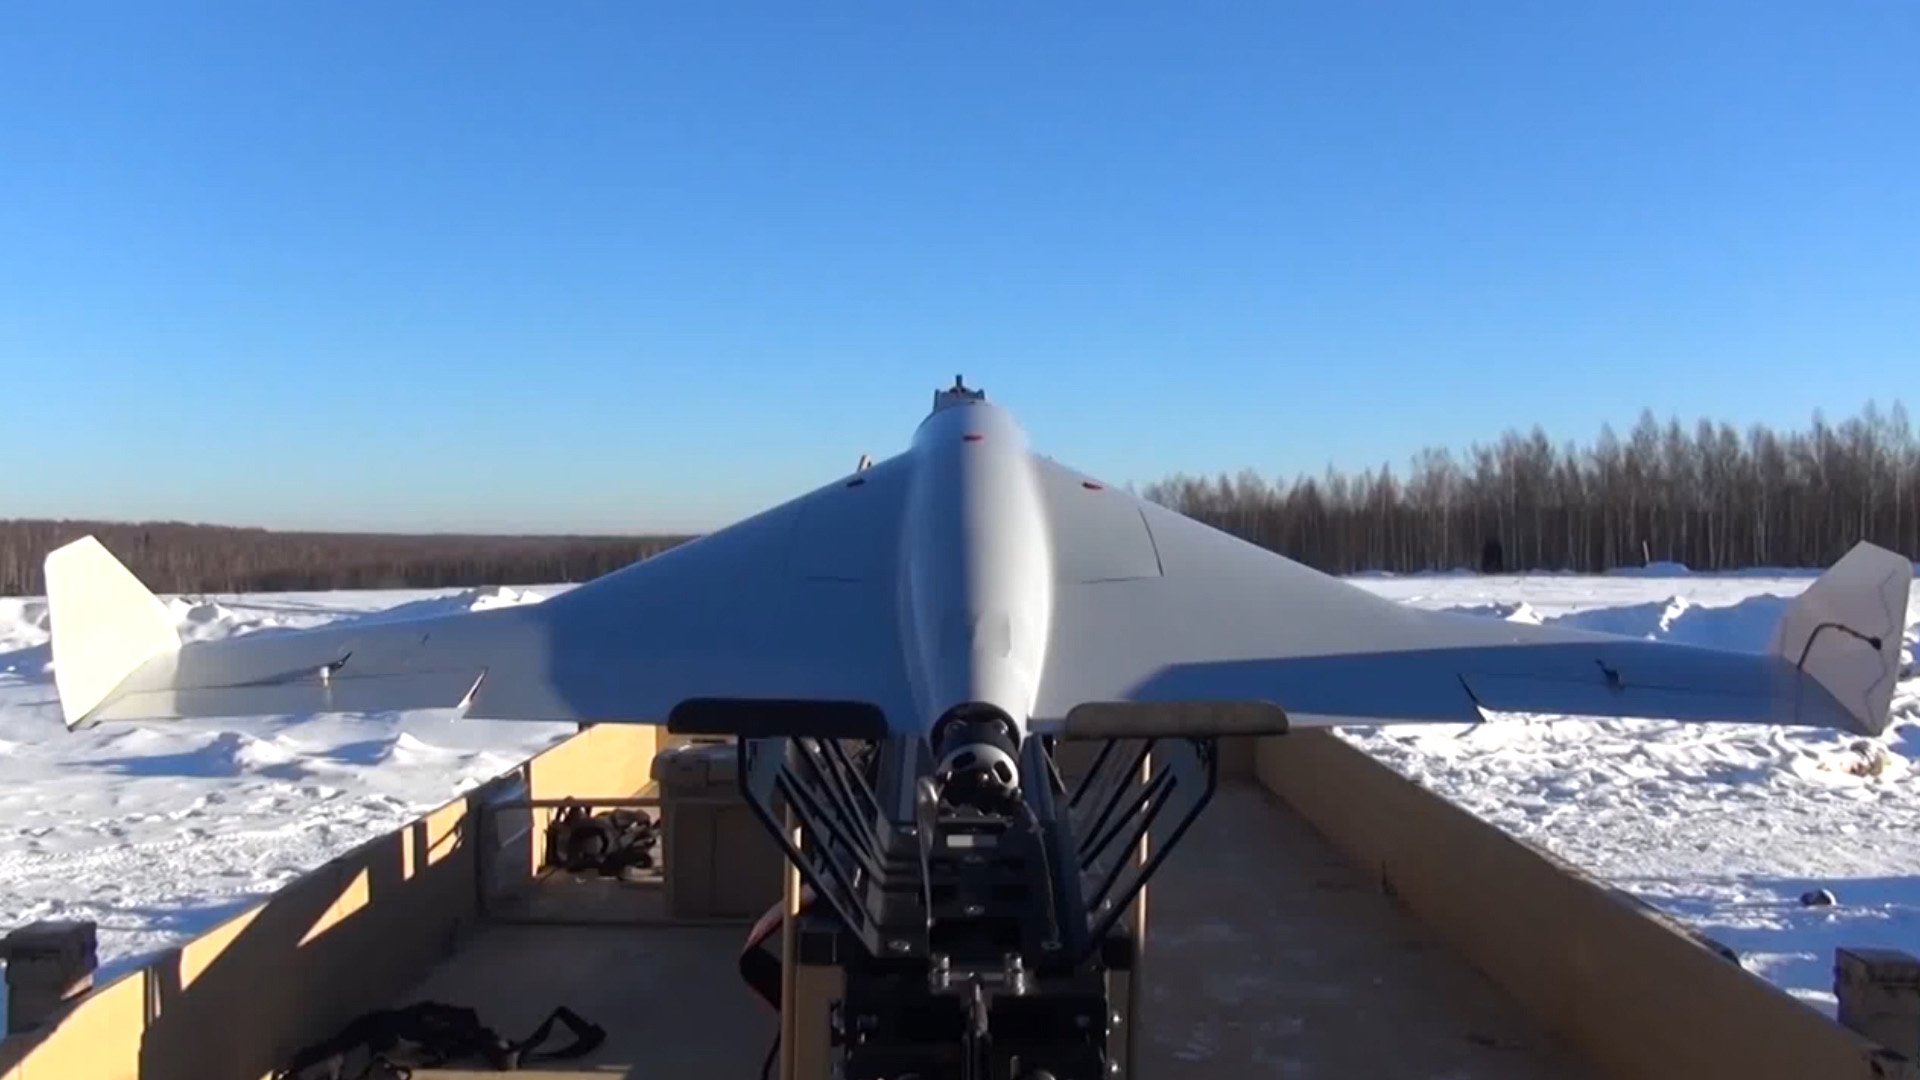 Vídeo impactante de un dron ucraniano lanzando una granada a un soldado ruso